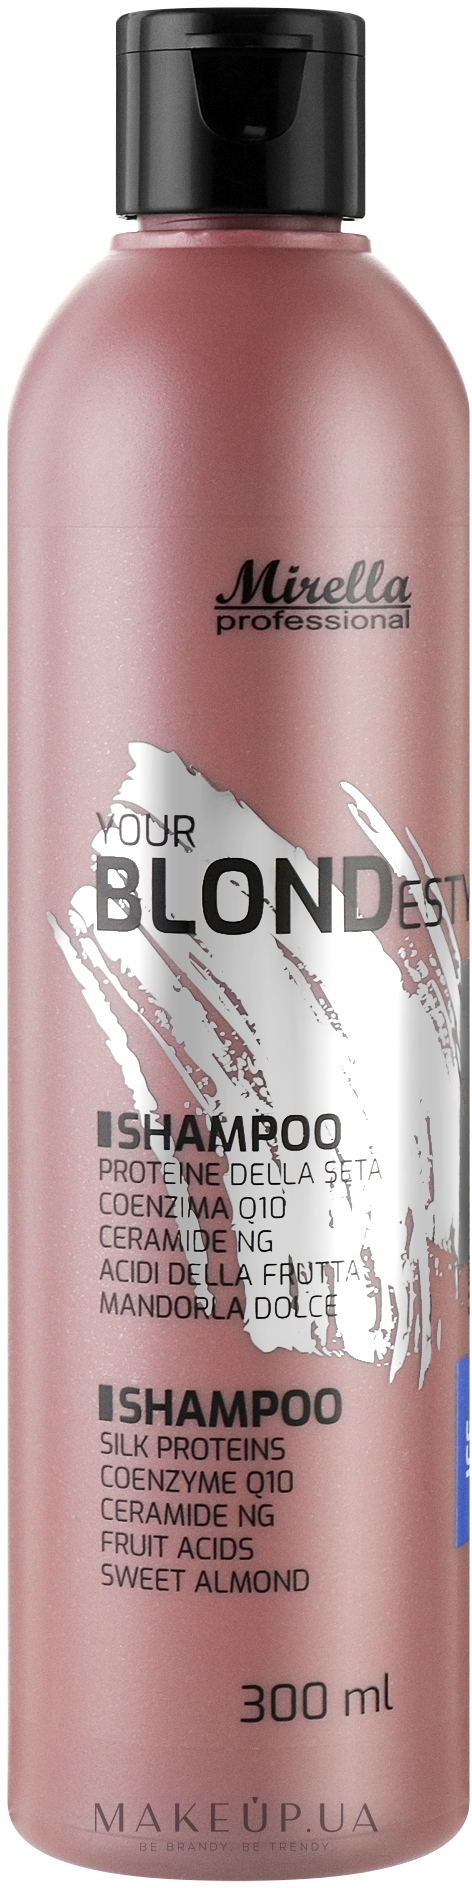 Шампунь для крижаних відтінків блонд - Mirella Ice Your Blondesty Shampoo — фото 300ml